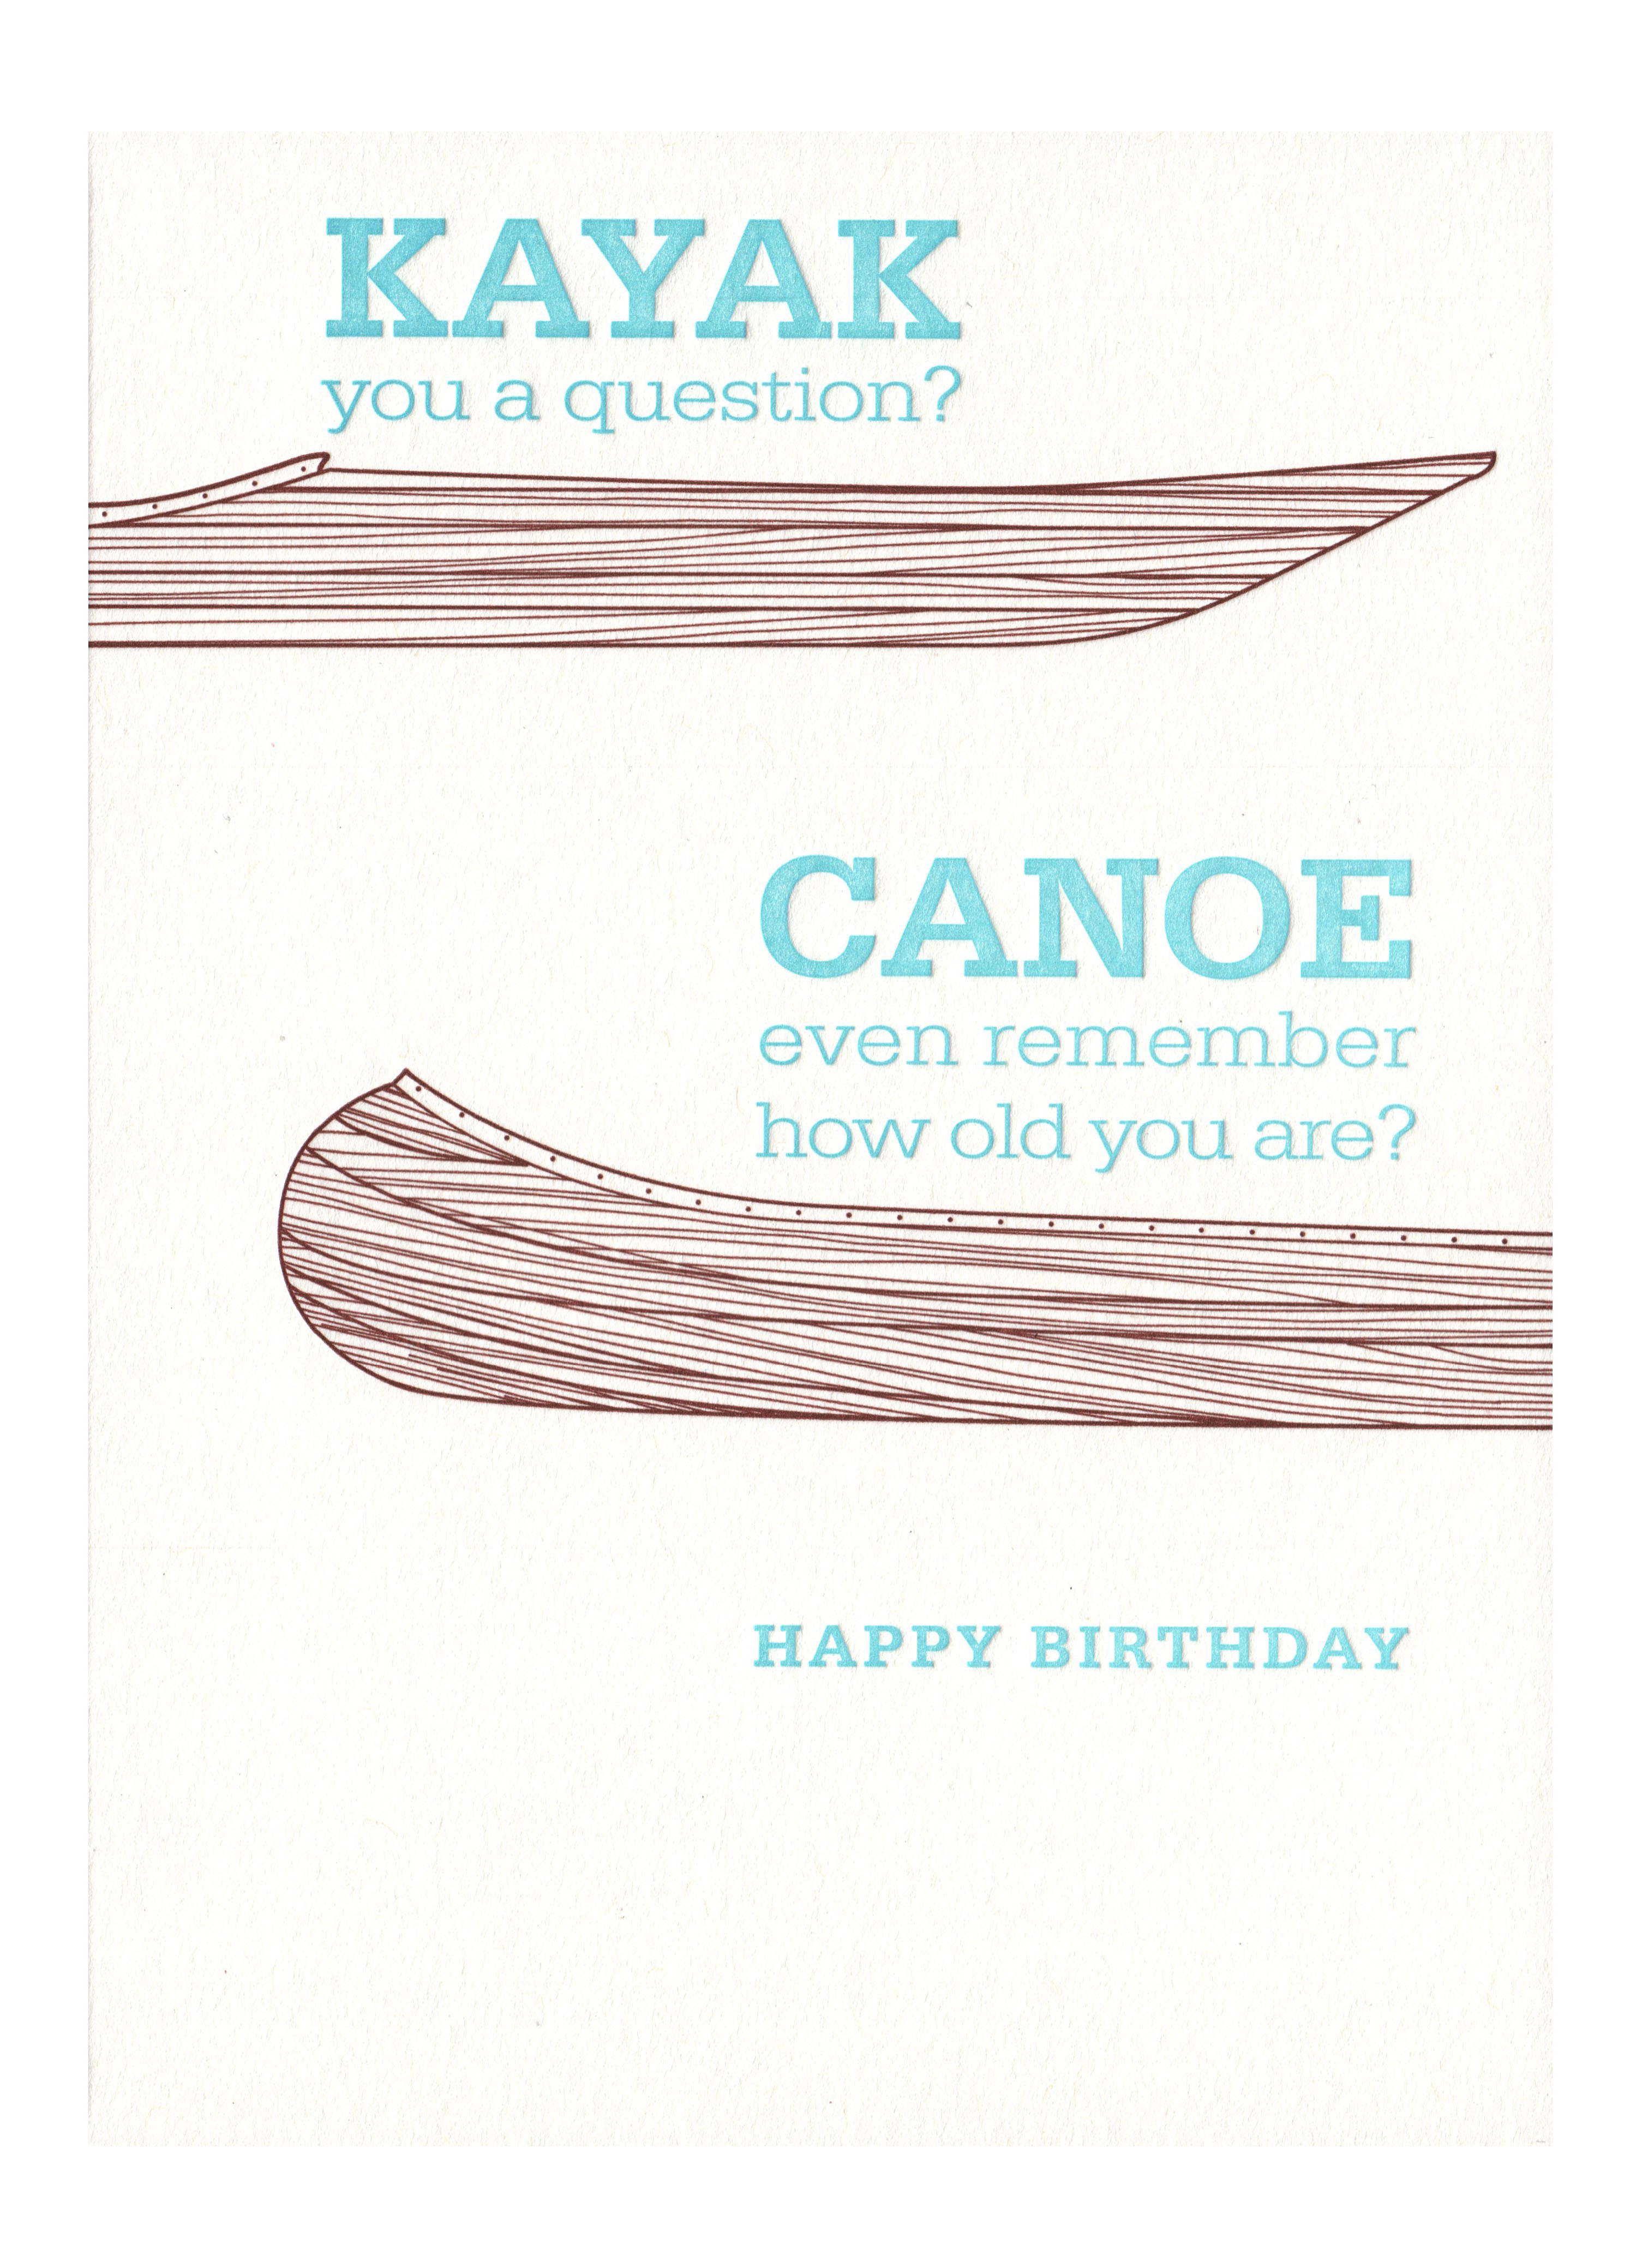 Letterpressed Kayak Canoe Birthday Card 
															/ Waterknot							